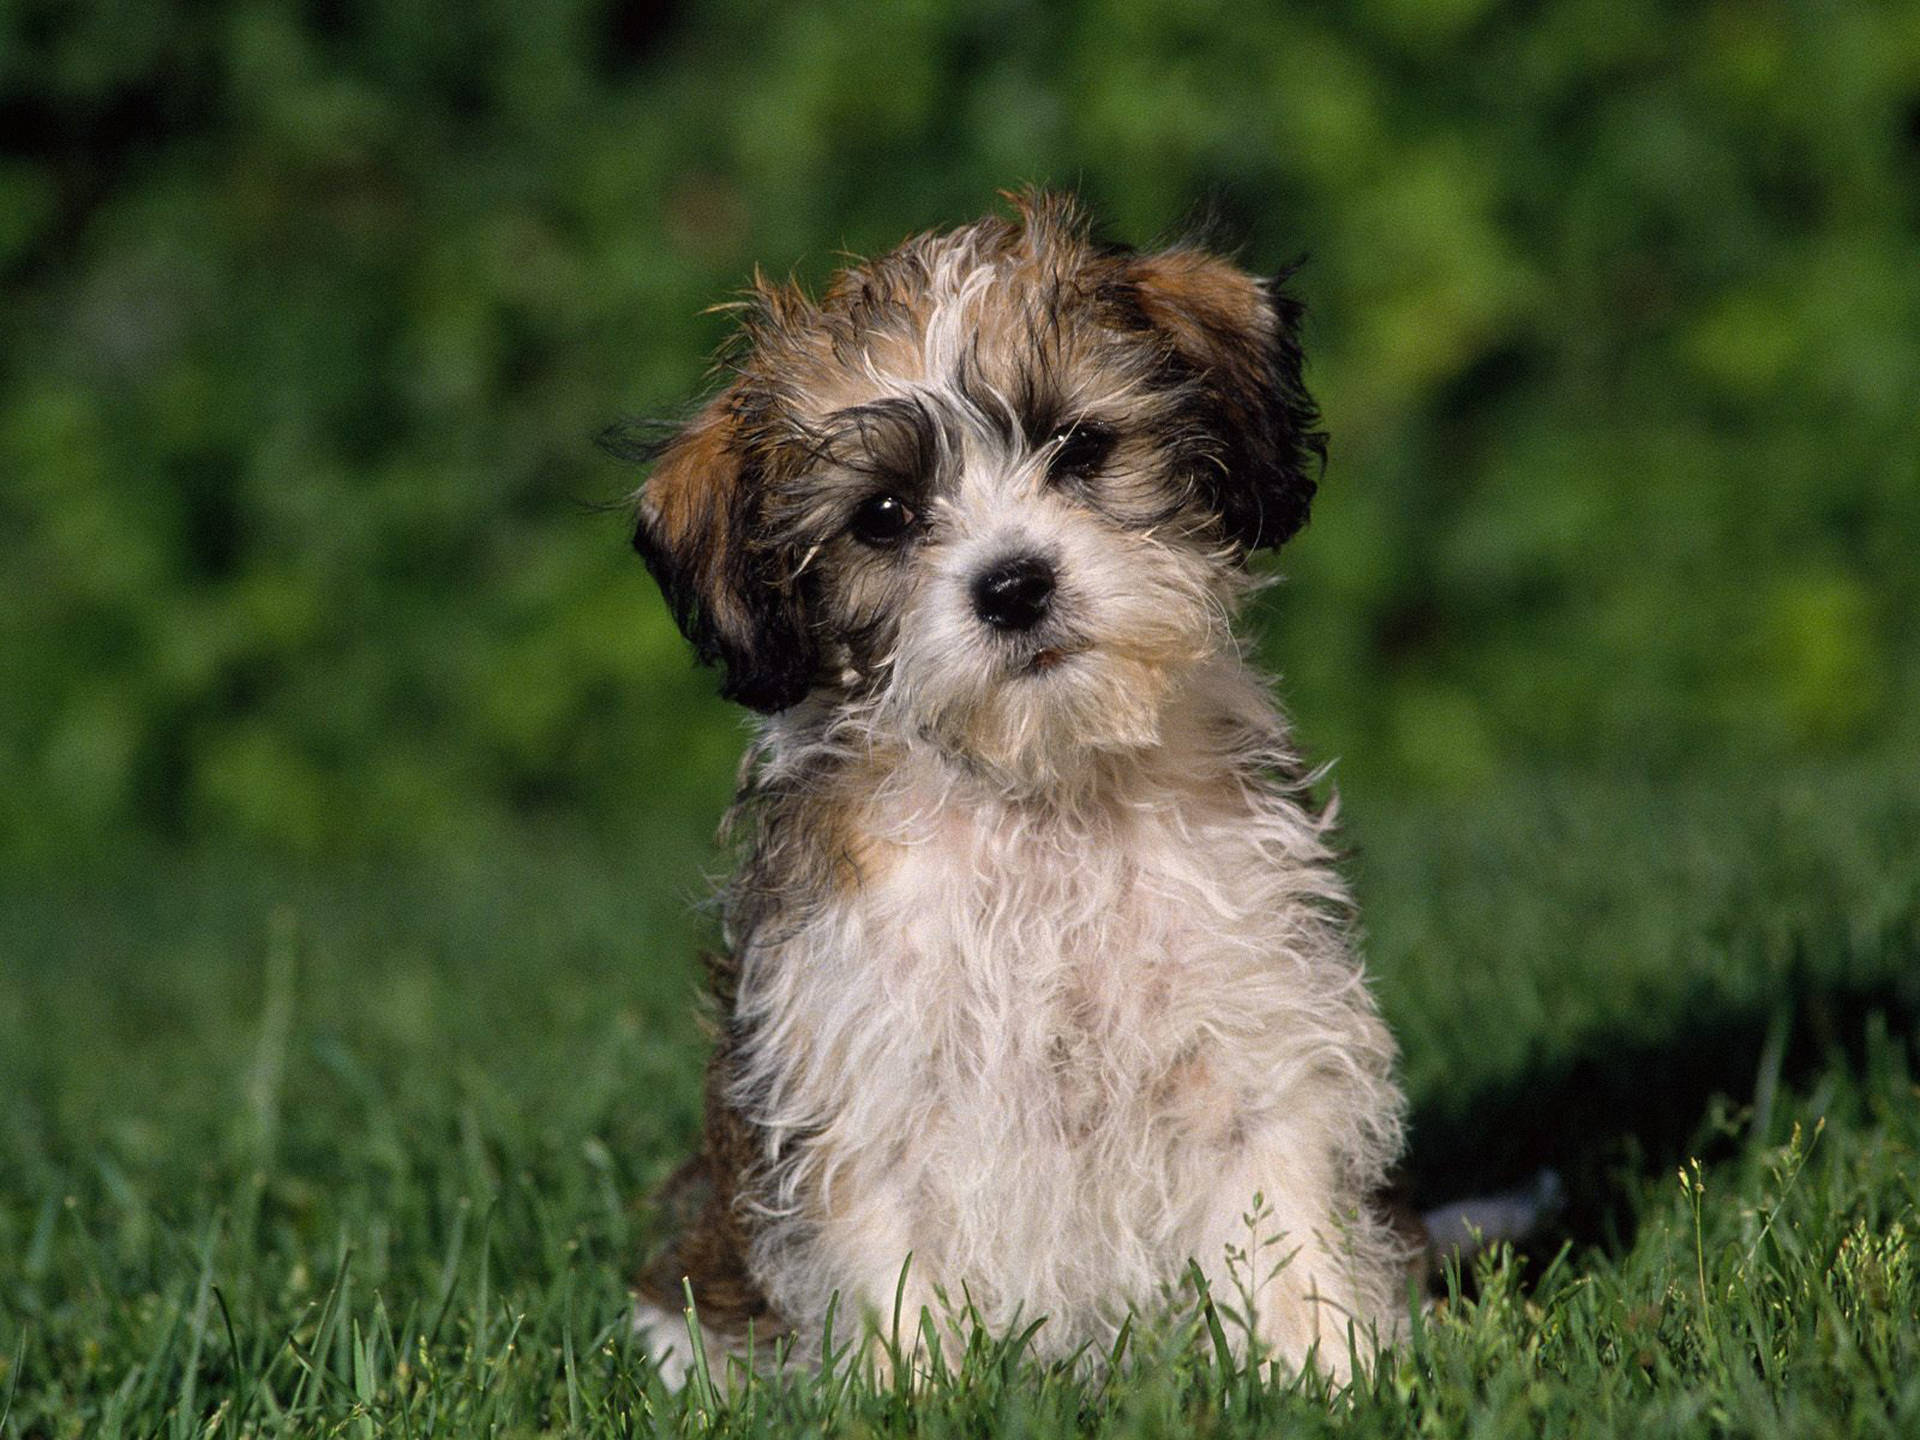 Sad Cute Puppy On Grass